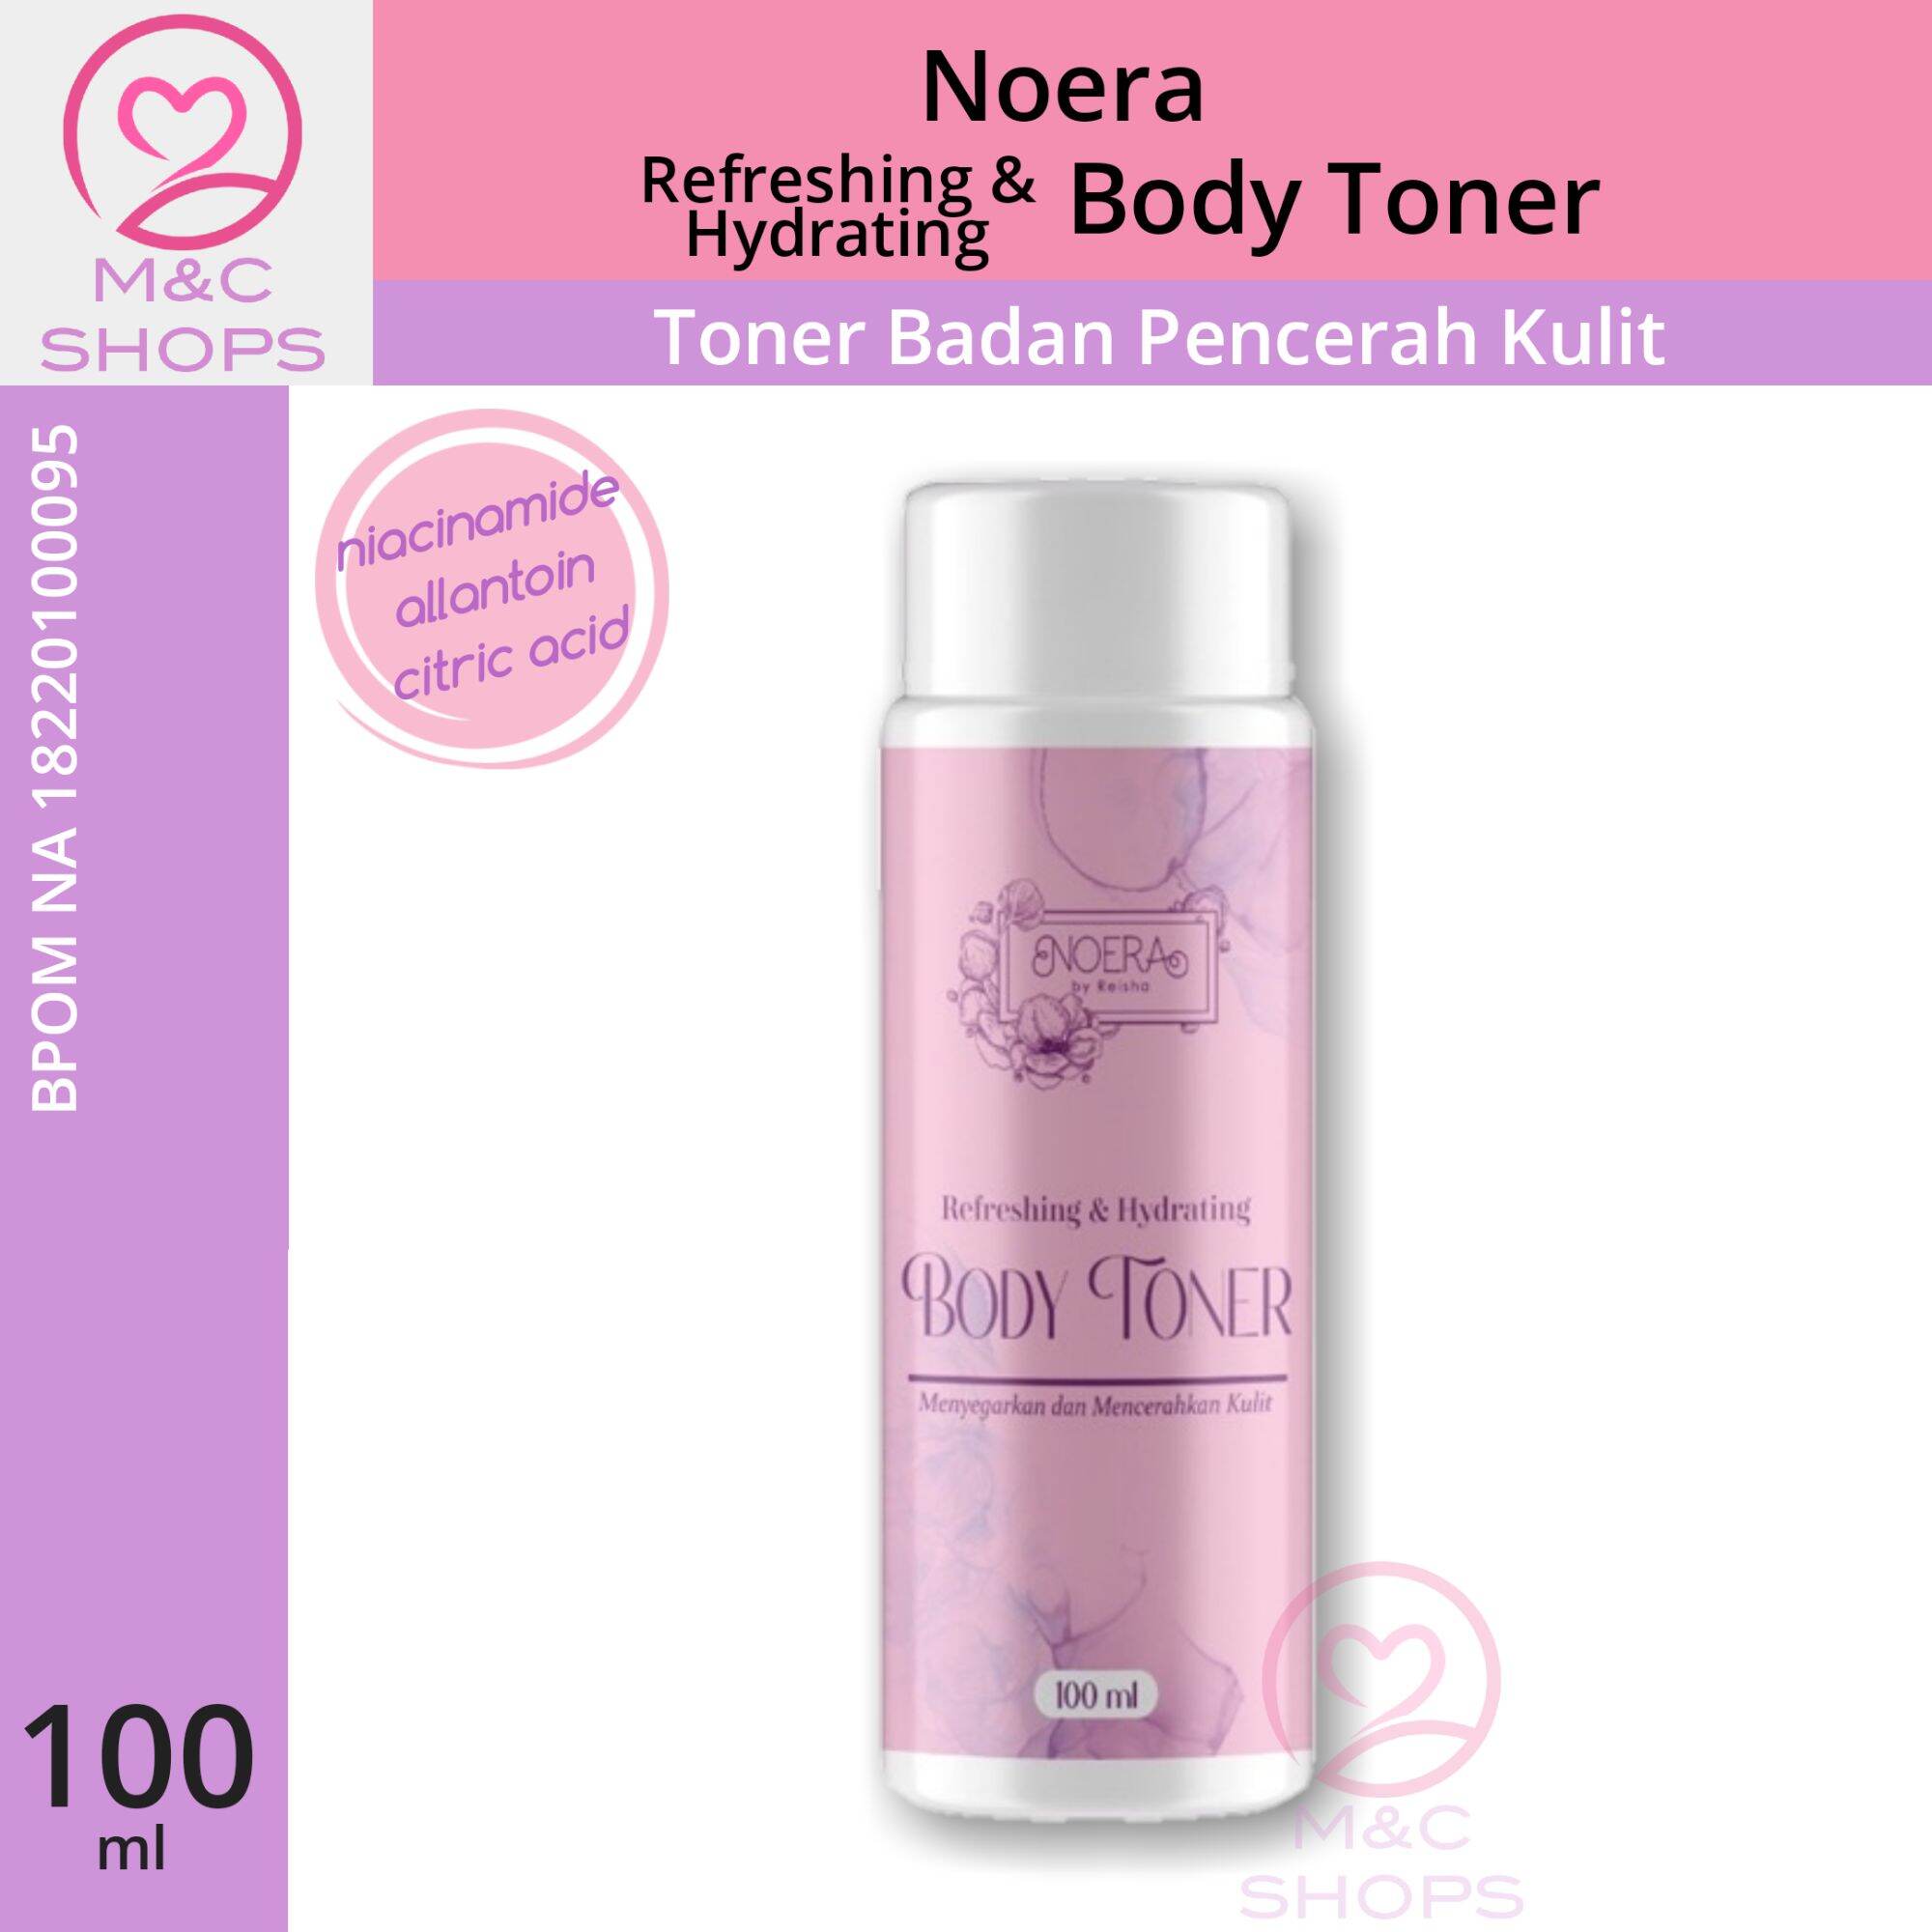 Jual Noera Refreshing & Hydrating Body Toner